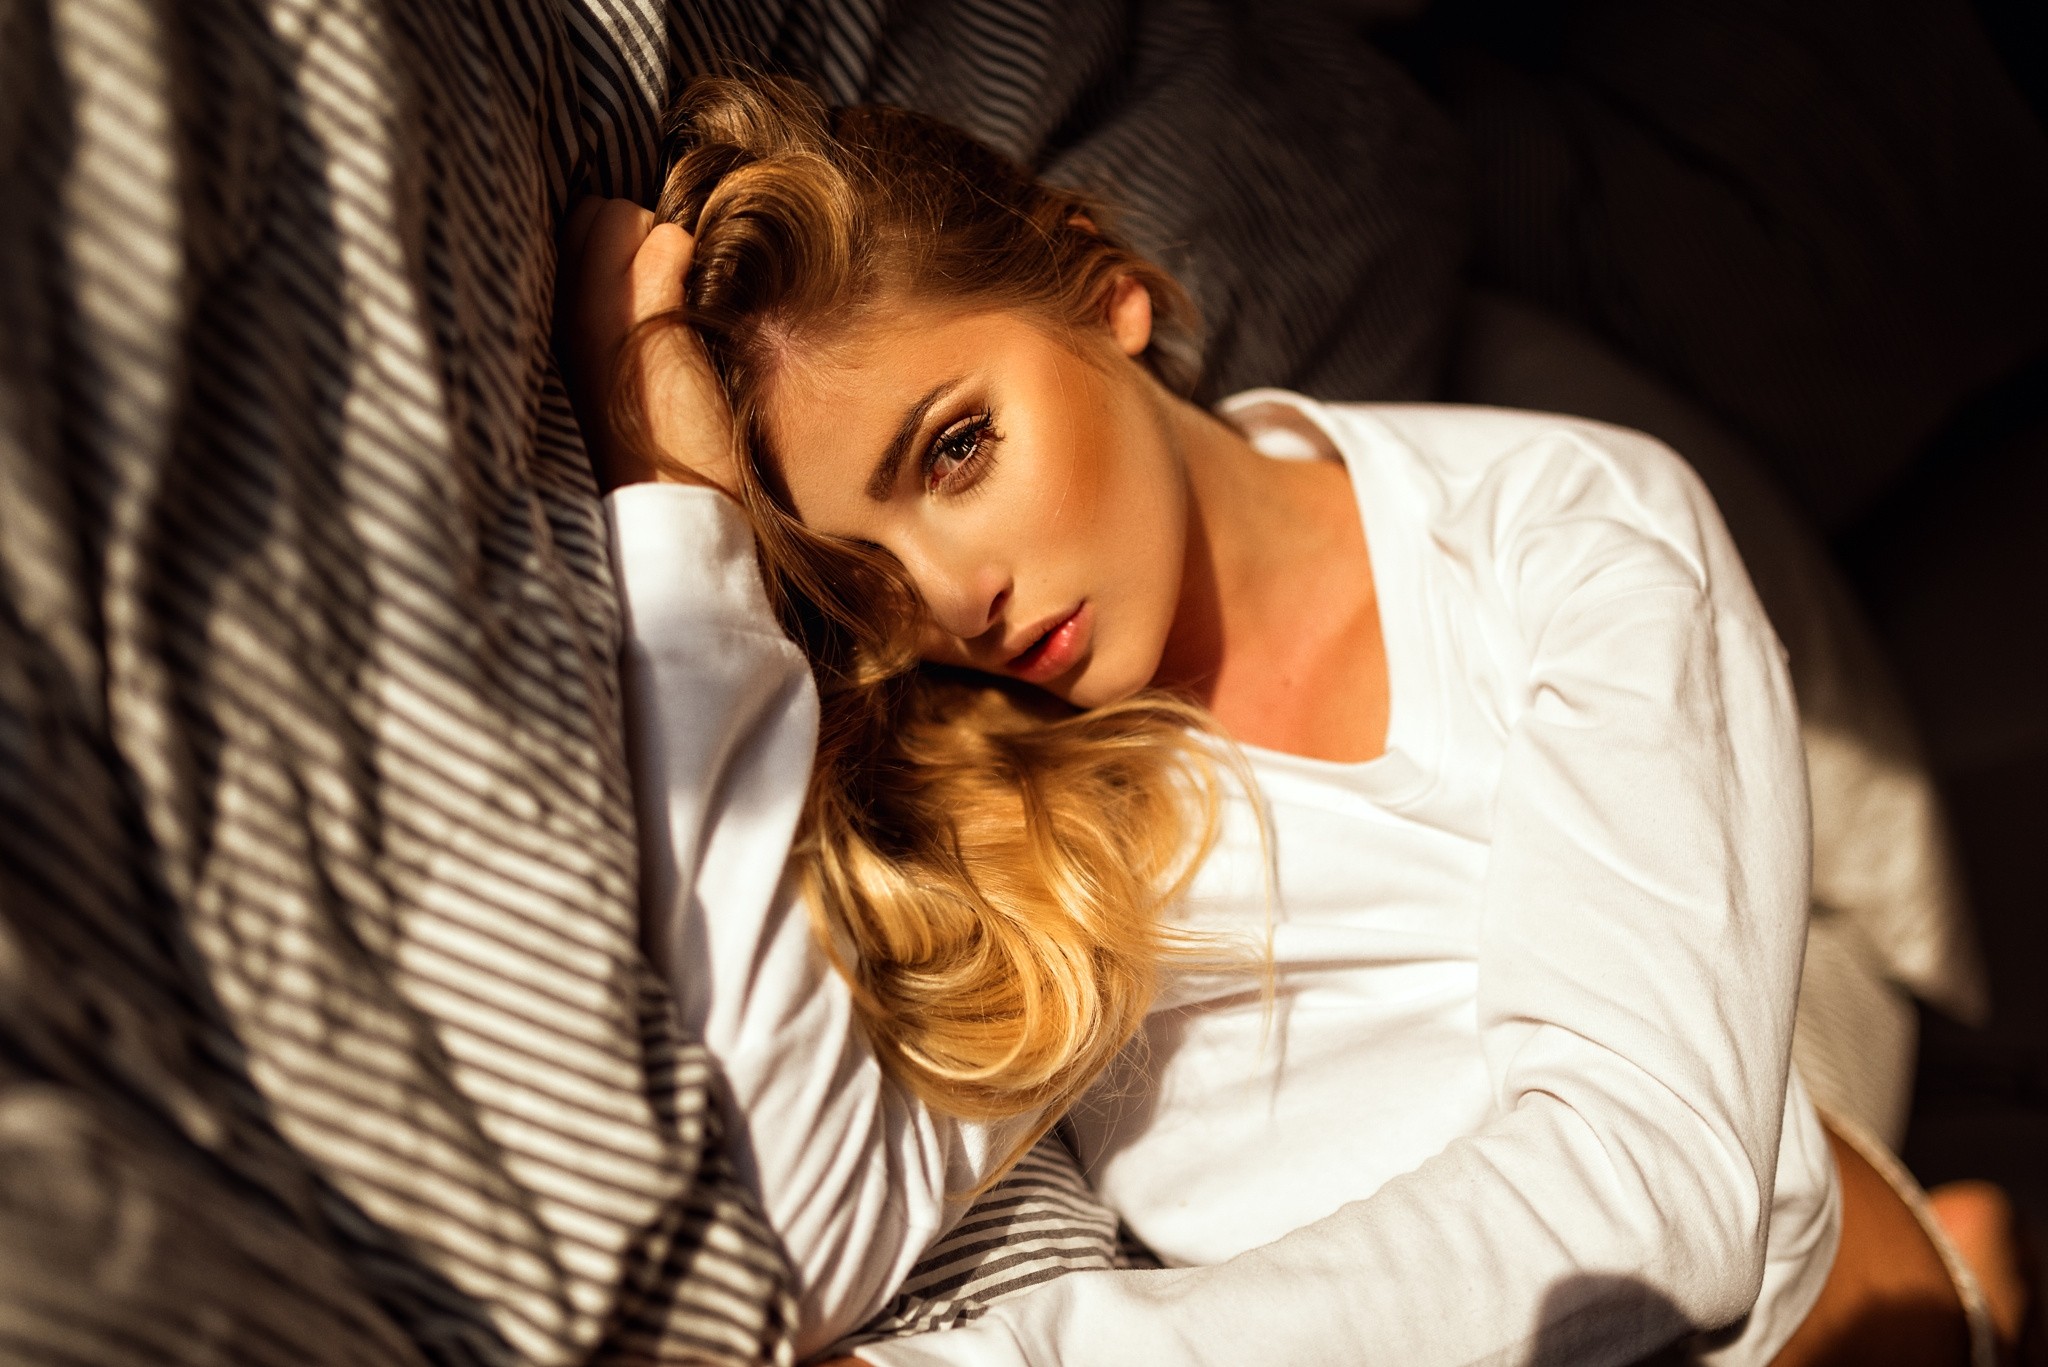 People 2048x1367 women blonde in bed portrait Miro Hofmann long hair closeup